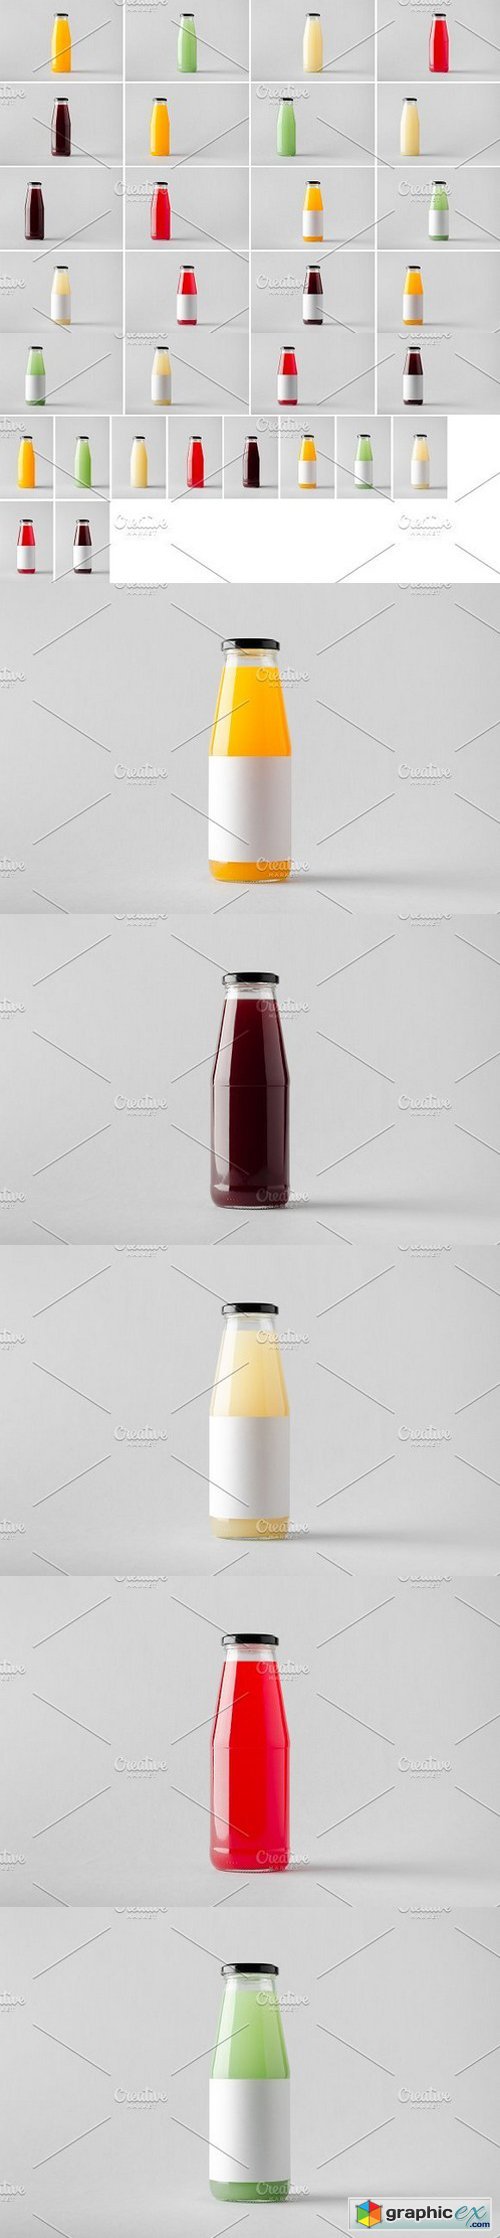 Juice Bottle Mock-Up Photo Bundle